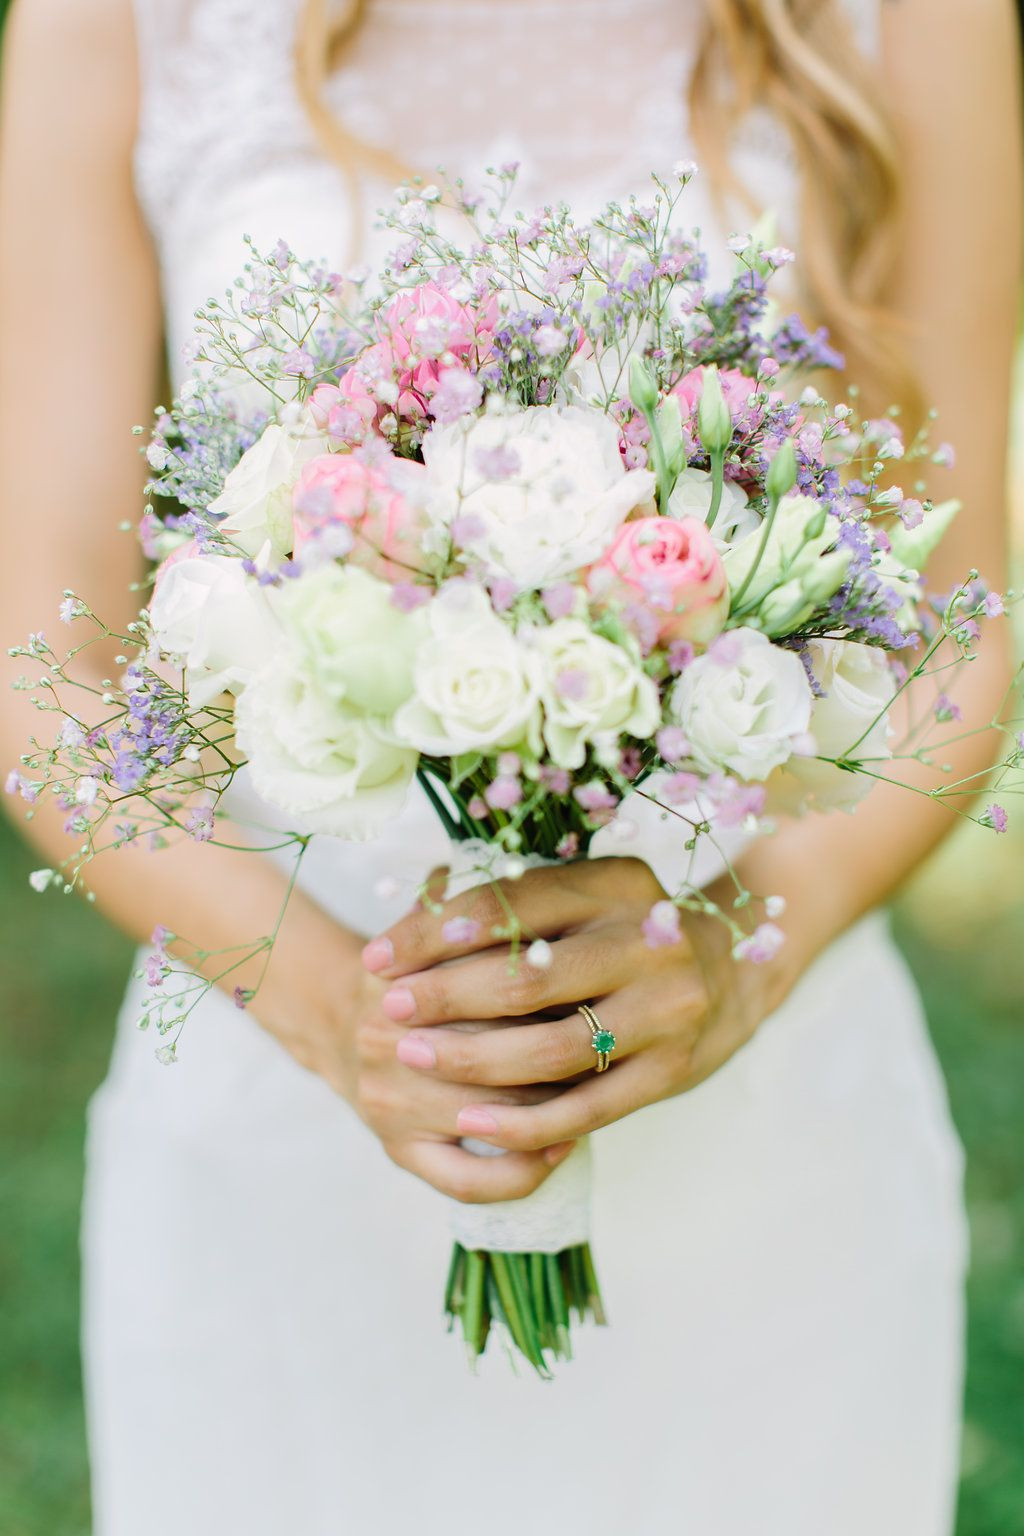 Brautstrauß Wildblumen
 Pin von Wildflower auf Wildflower Wedding Bouquets